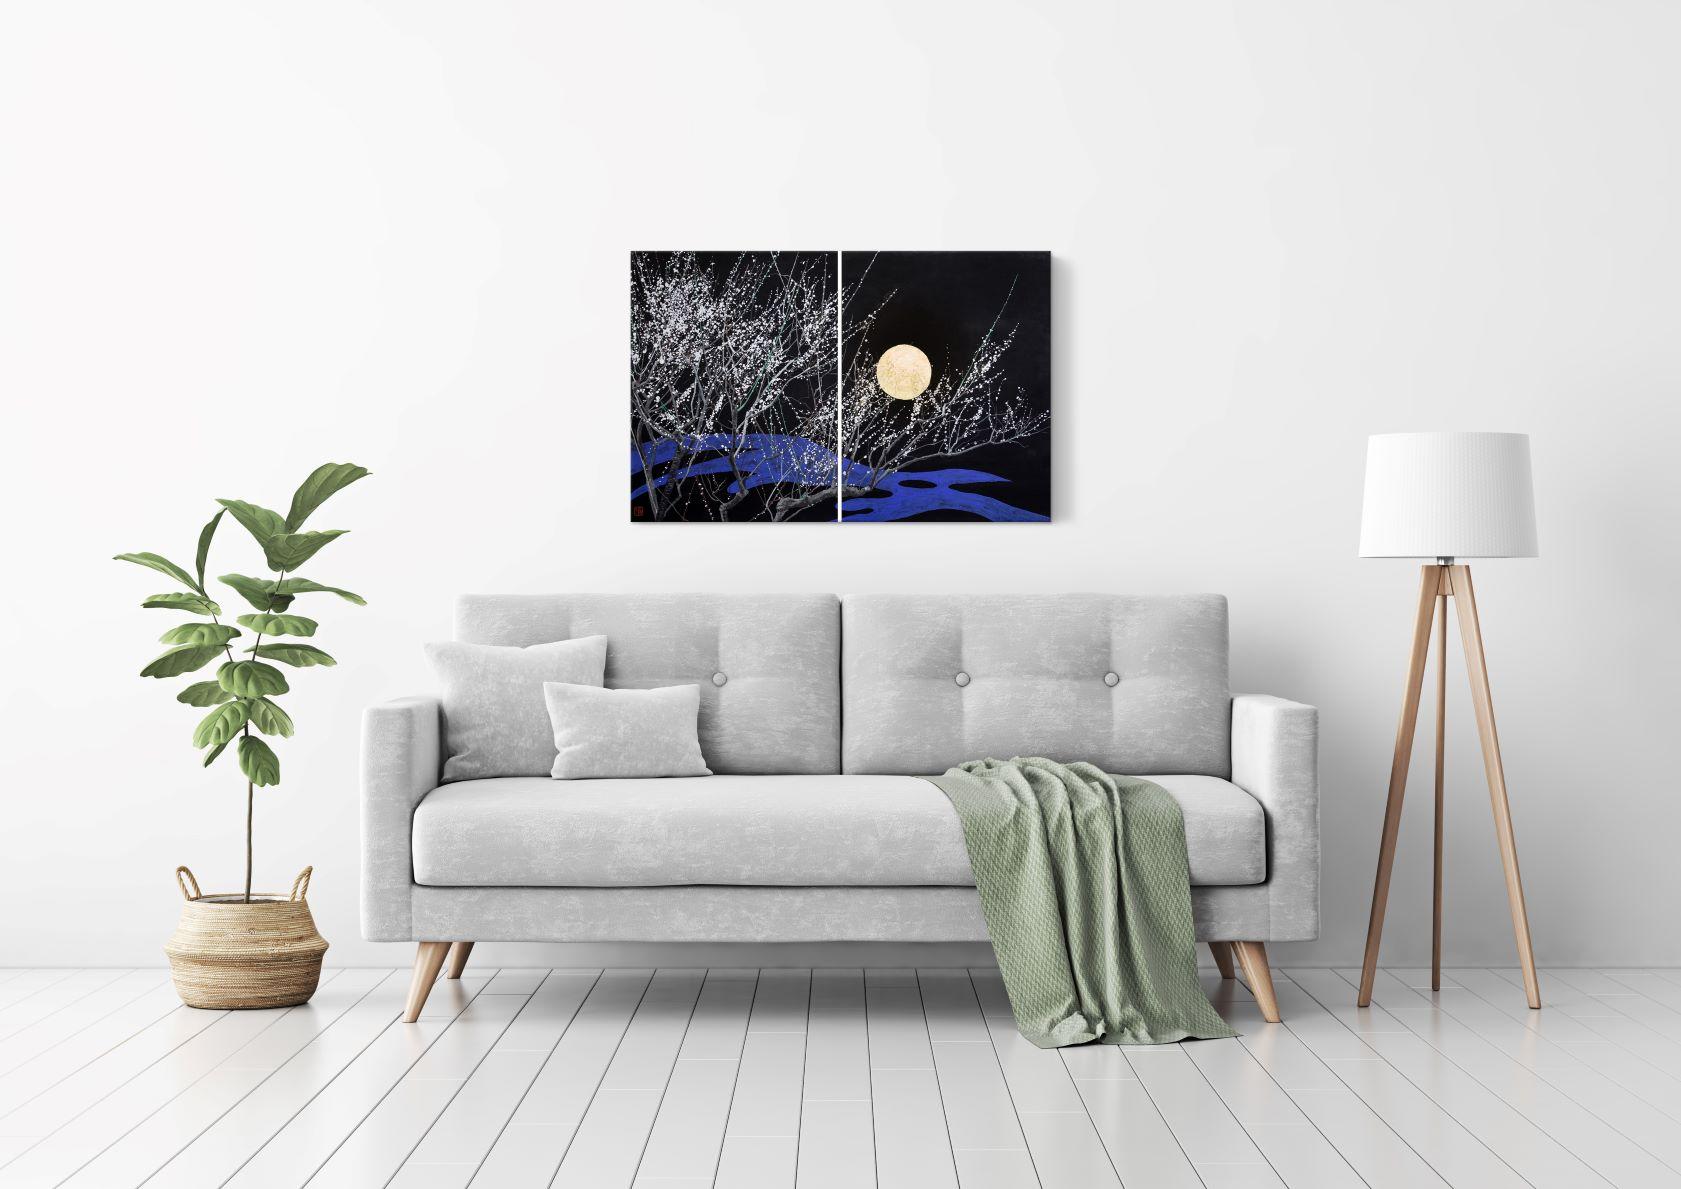 Nocturn IV ist ein Diptychon des französisch-japanischen zeitgenössischen Künstlers Lumi Mizutani, das eine traditionelle japanische Landschaft im japanischen Stil darstellt: Zweige mit weißen Blumen erscheinen auf einem schwarzen Hintergrund unter